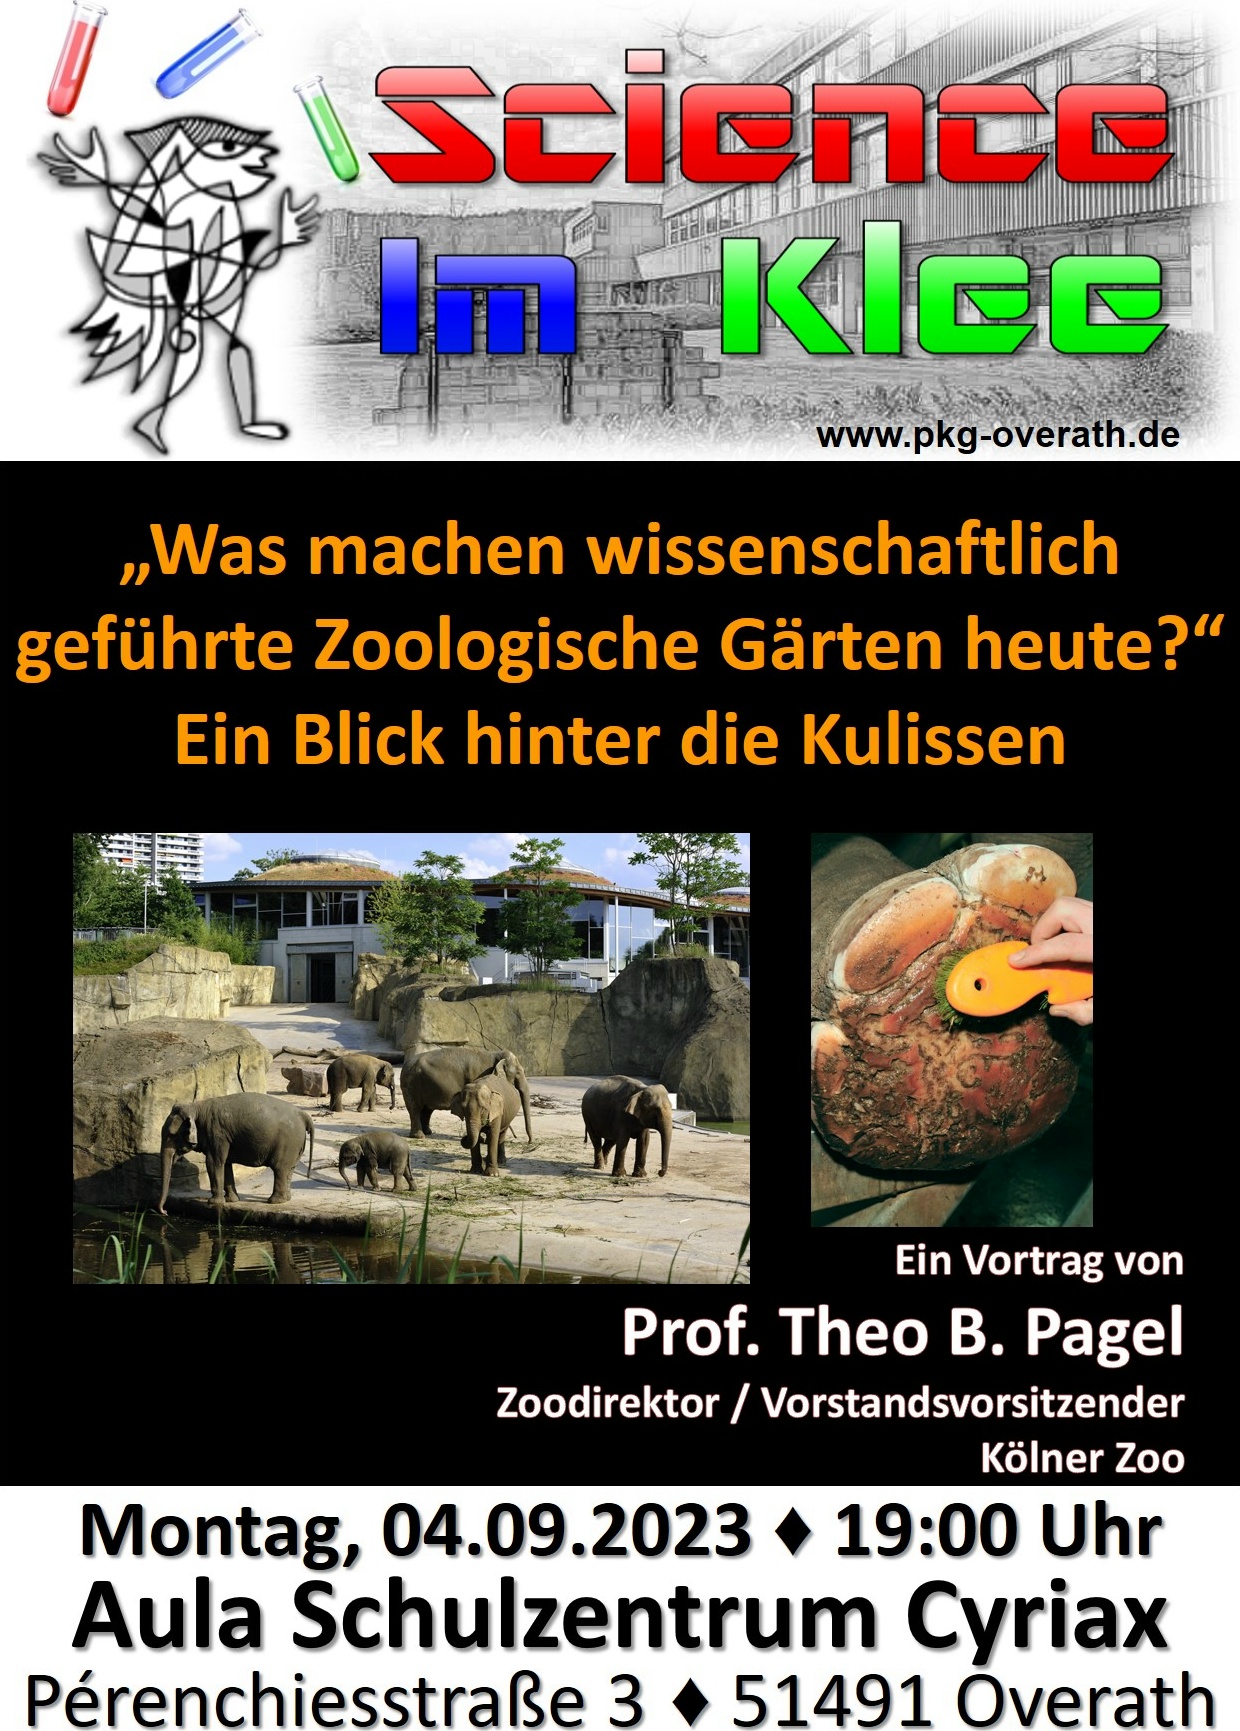 „Science im Klee“ am Montag, 04.09.2023, um 19:00 Uhr in der Aula mit Prof. Dr. Theo B. Pagel, Direktor des Kölner Zoos